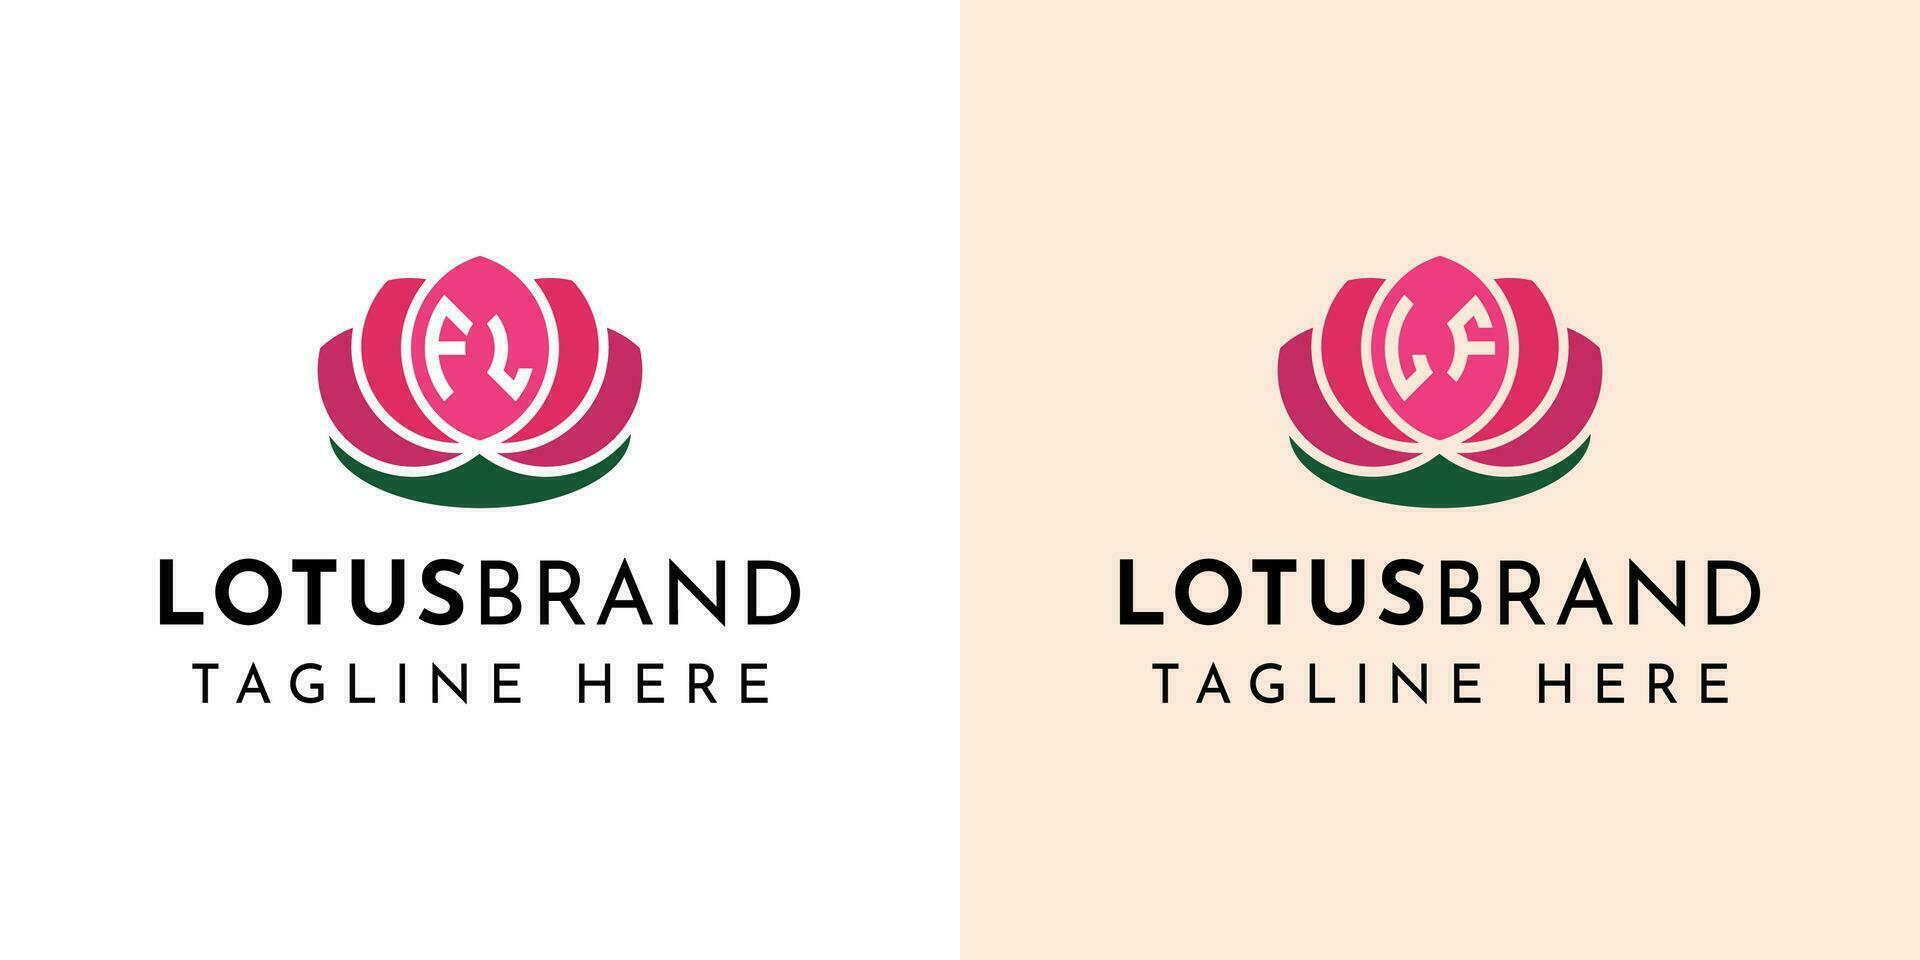 lettre fl et si lotus logo ensemble, adapté pour affaires en relation à lotus fleurs avec fl ou si initiales. vecteur